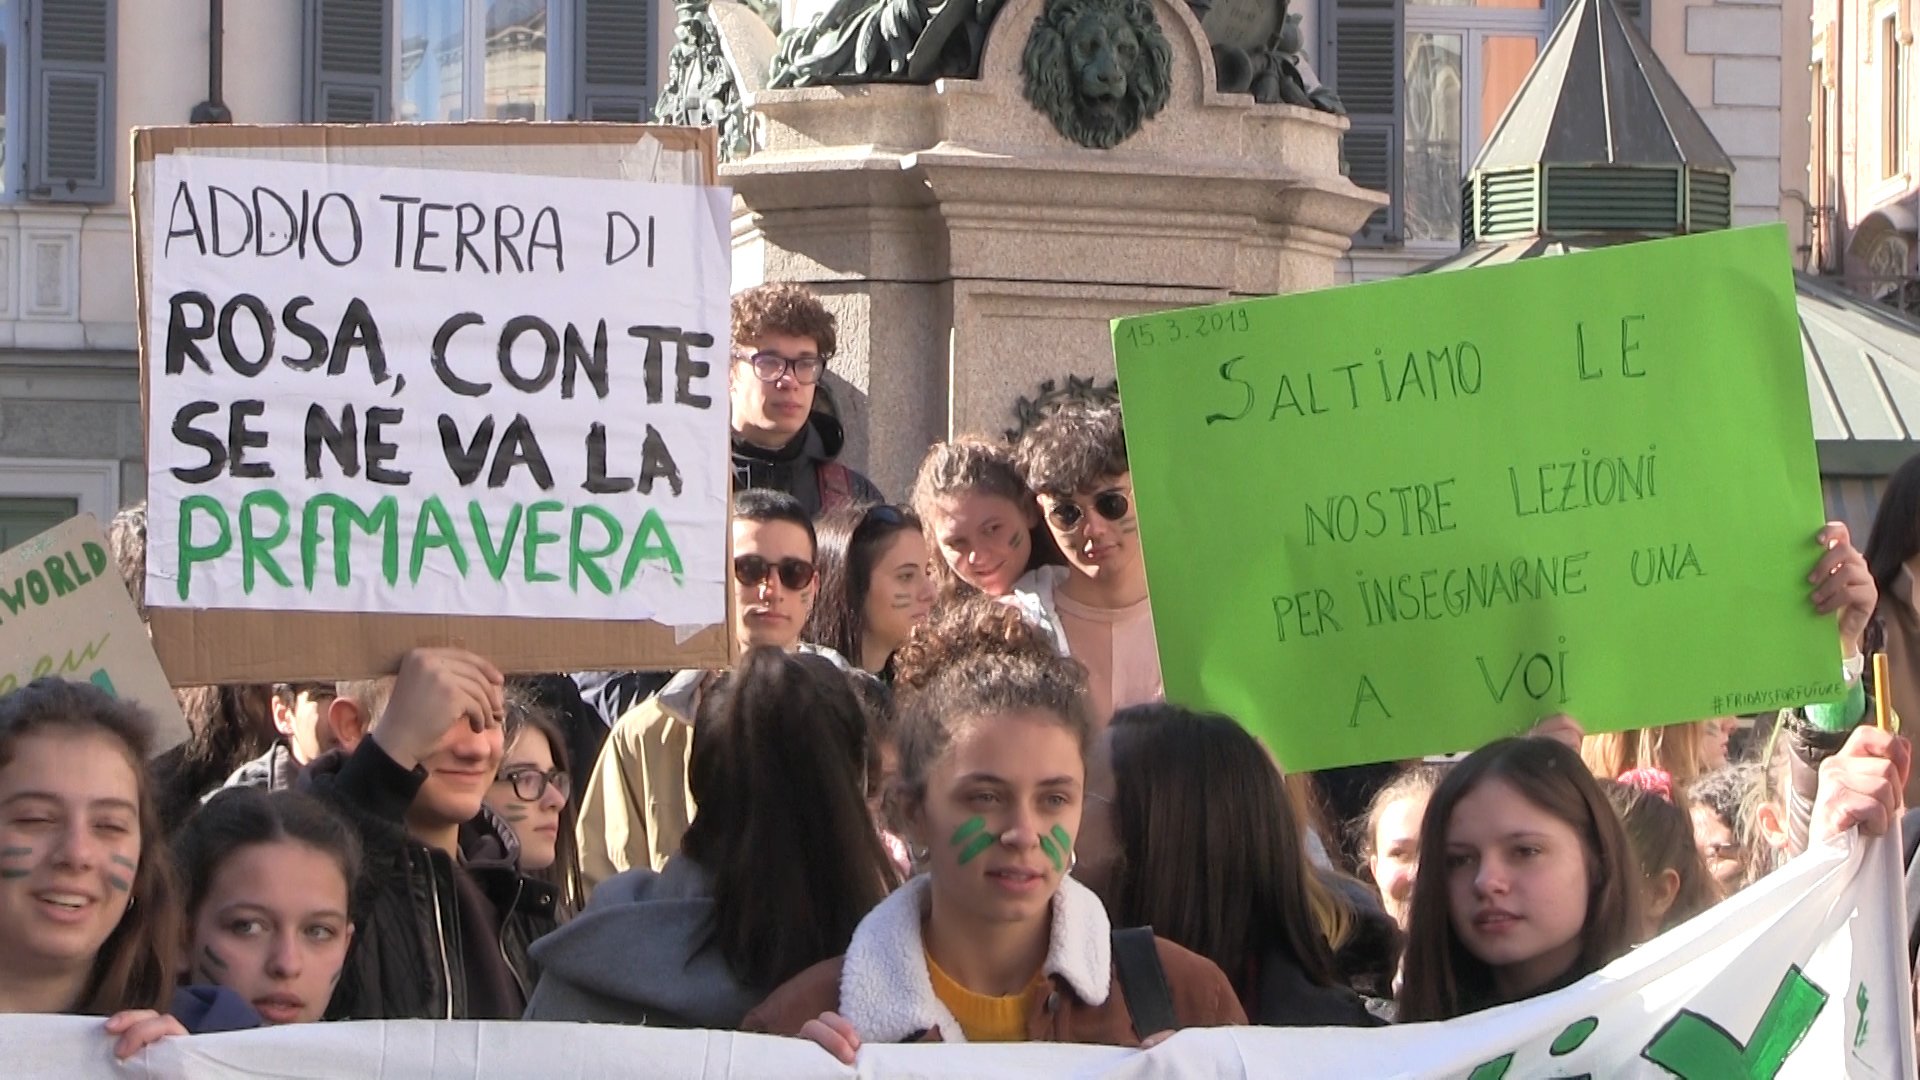 Fridays for future, anche ad Alessandria il corteo in centro: “Per il clima e contro l’alternanza scuola/lavoro”